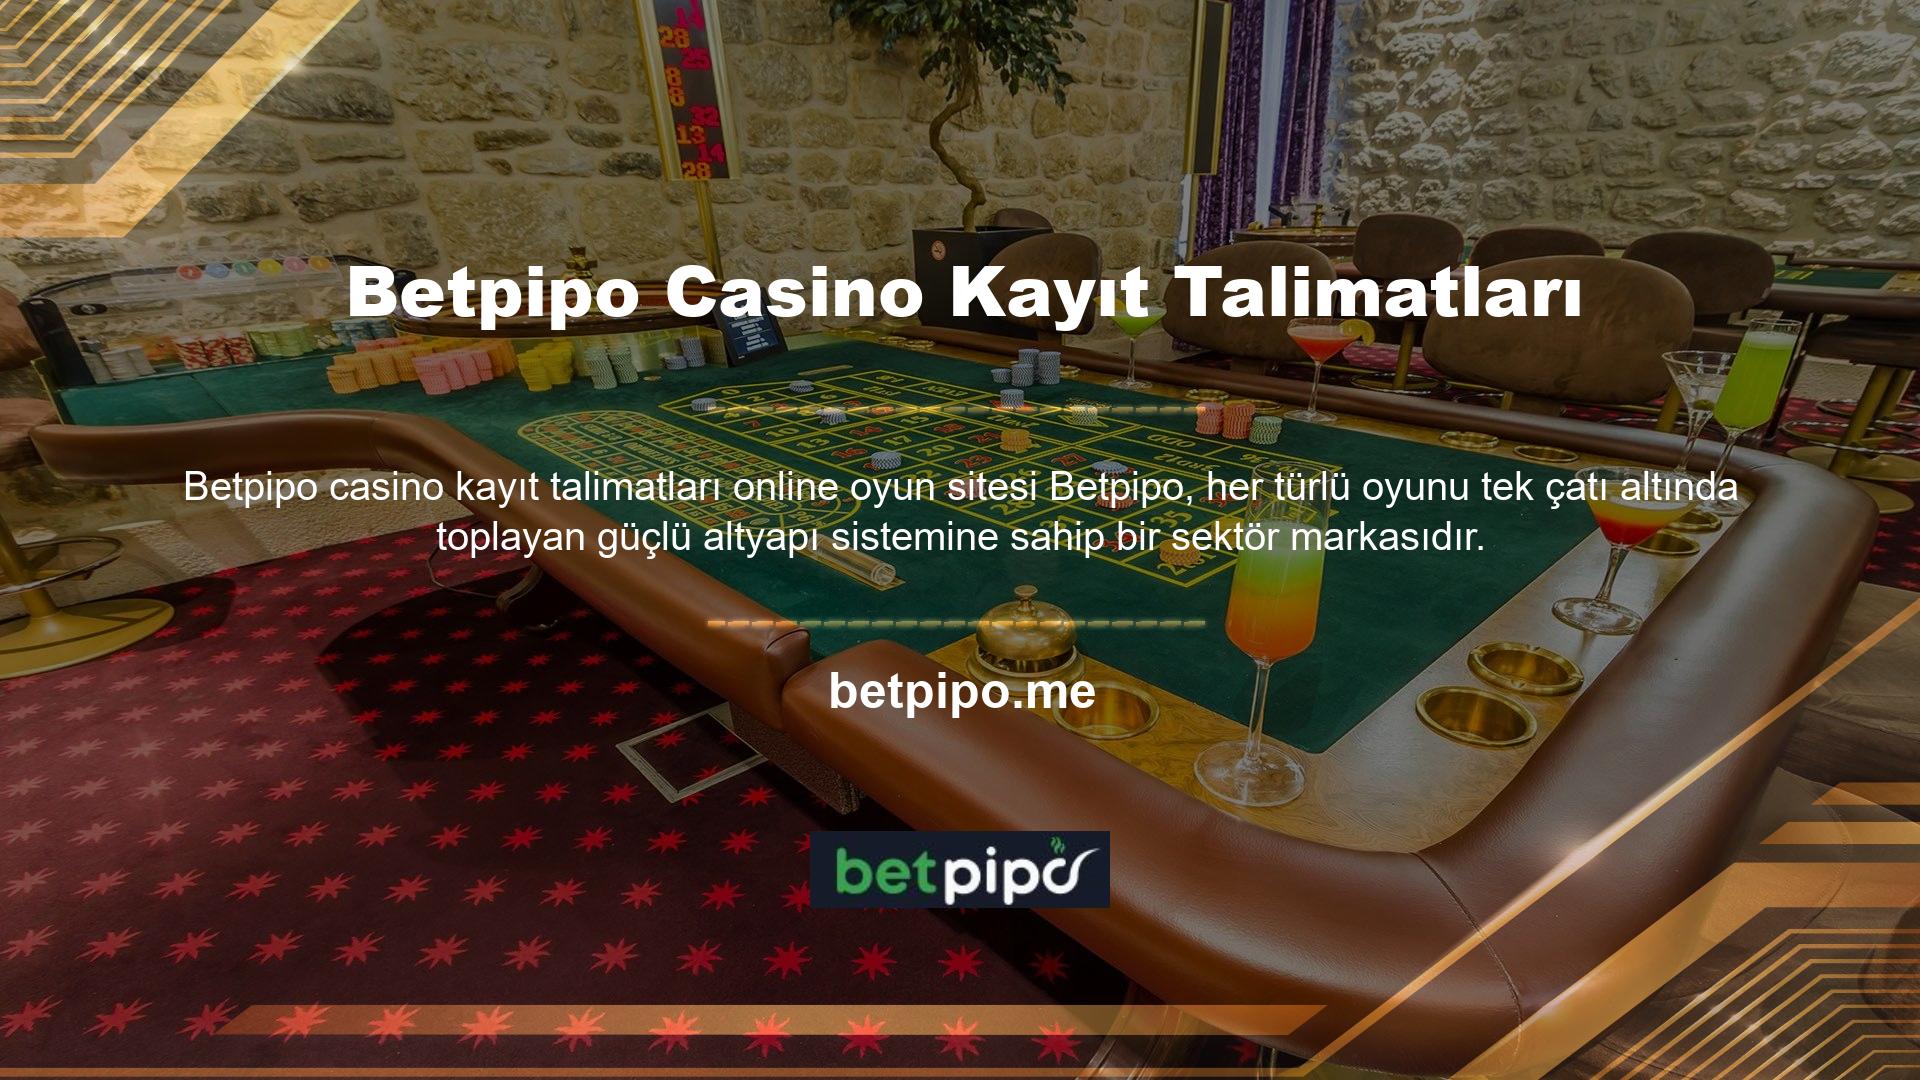 Betpipo giriş adresi güncellendikten sonra, Türk oyuncular yeni giriş adreslerini kullanarak casino oyunlarına erişebilirler